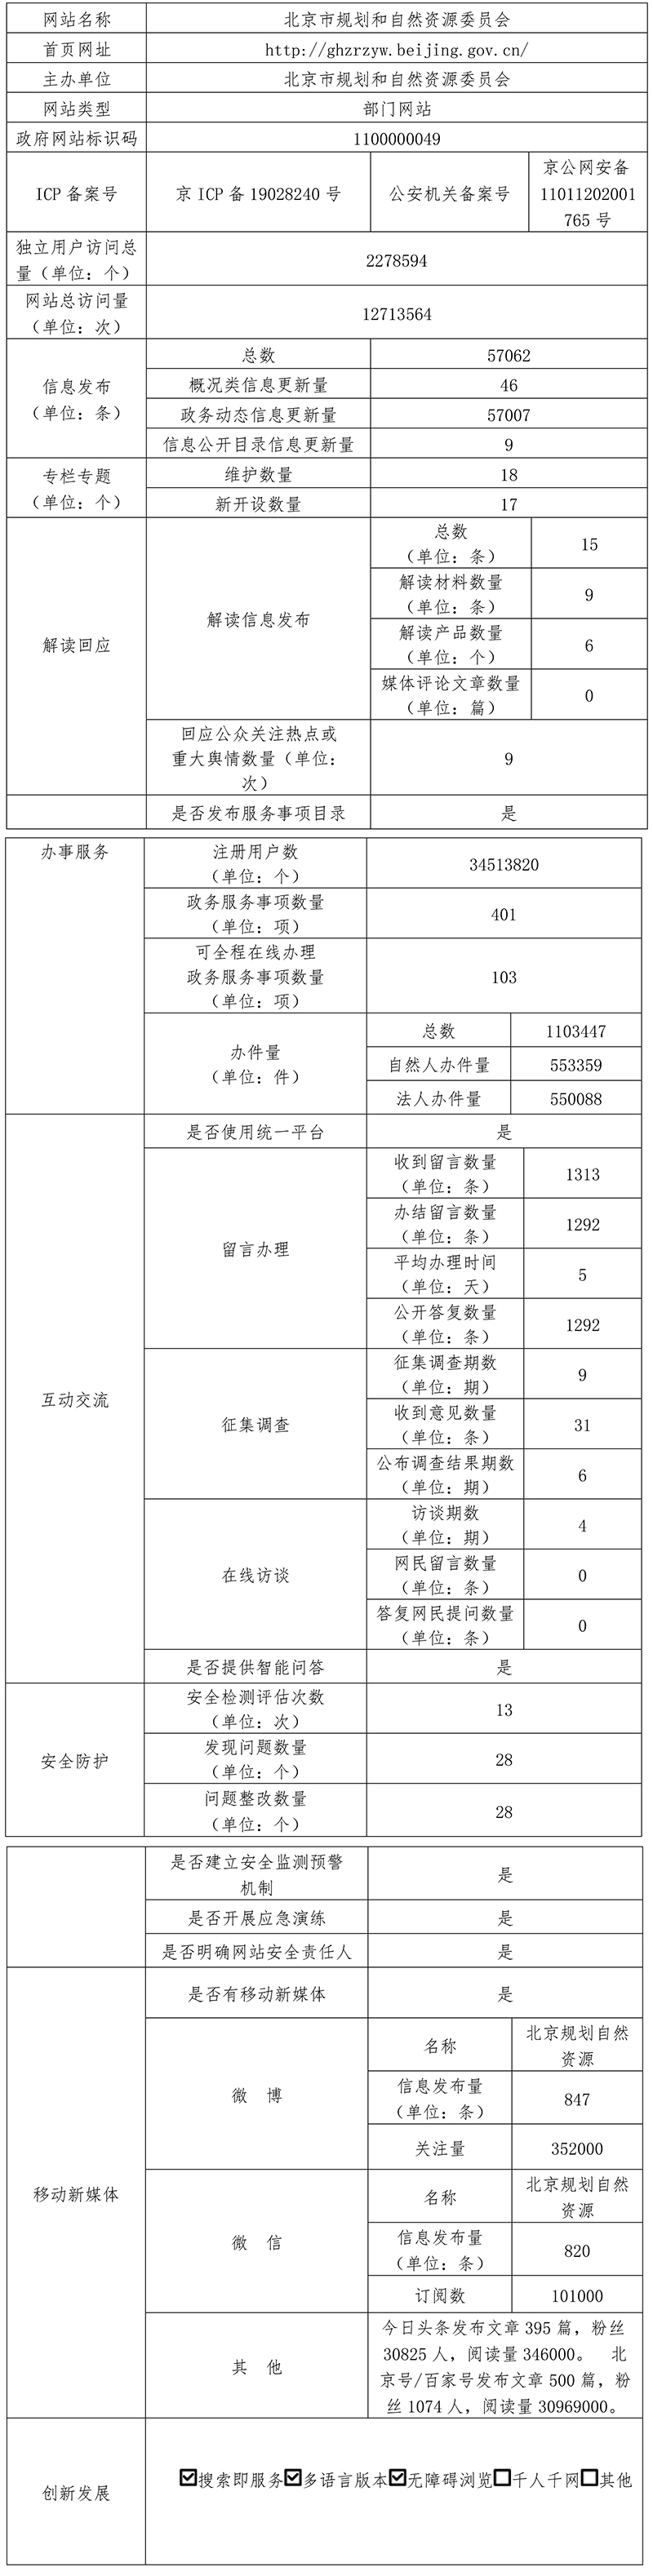 北京市规划和自然资源委员会2021年政府网站年度工作报表